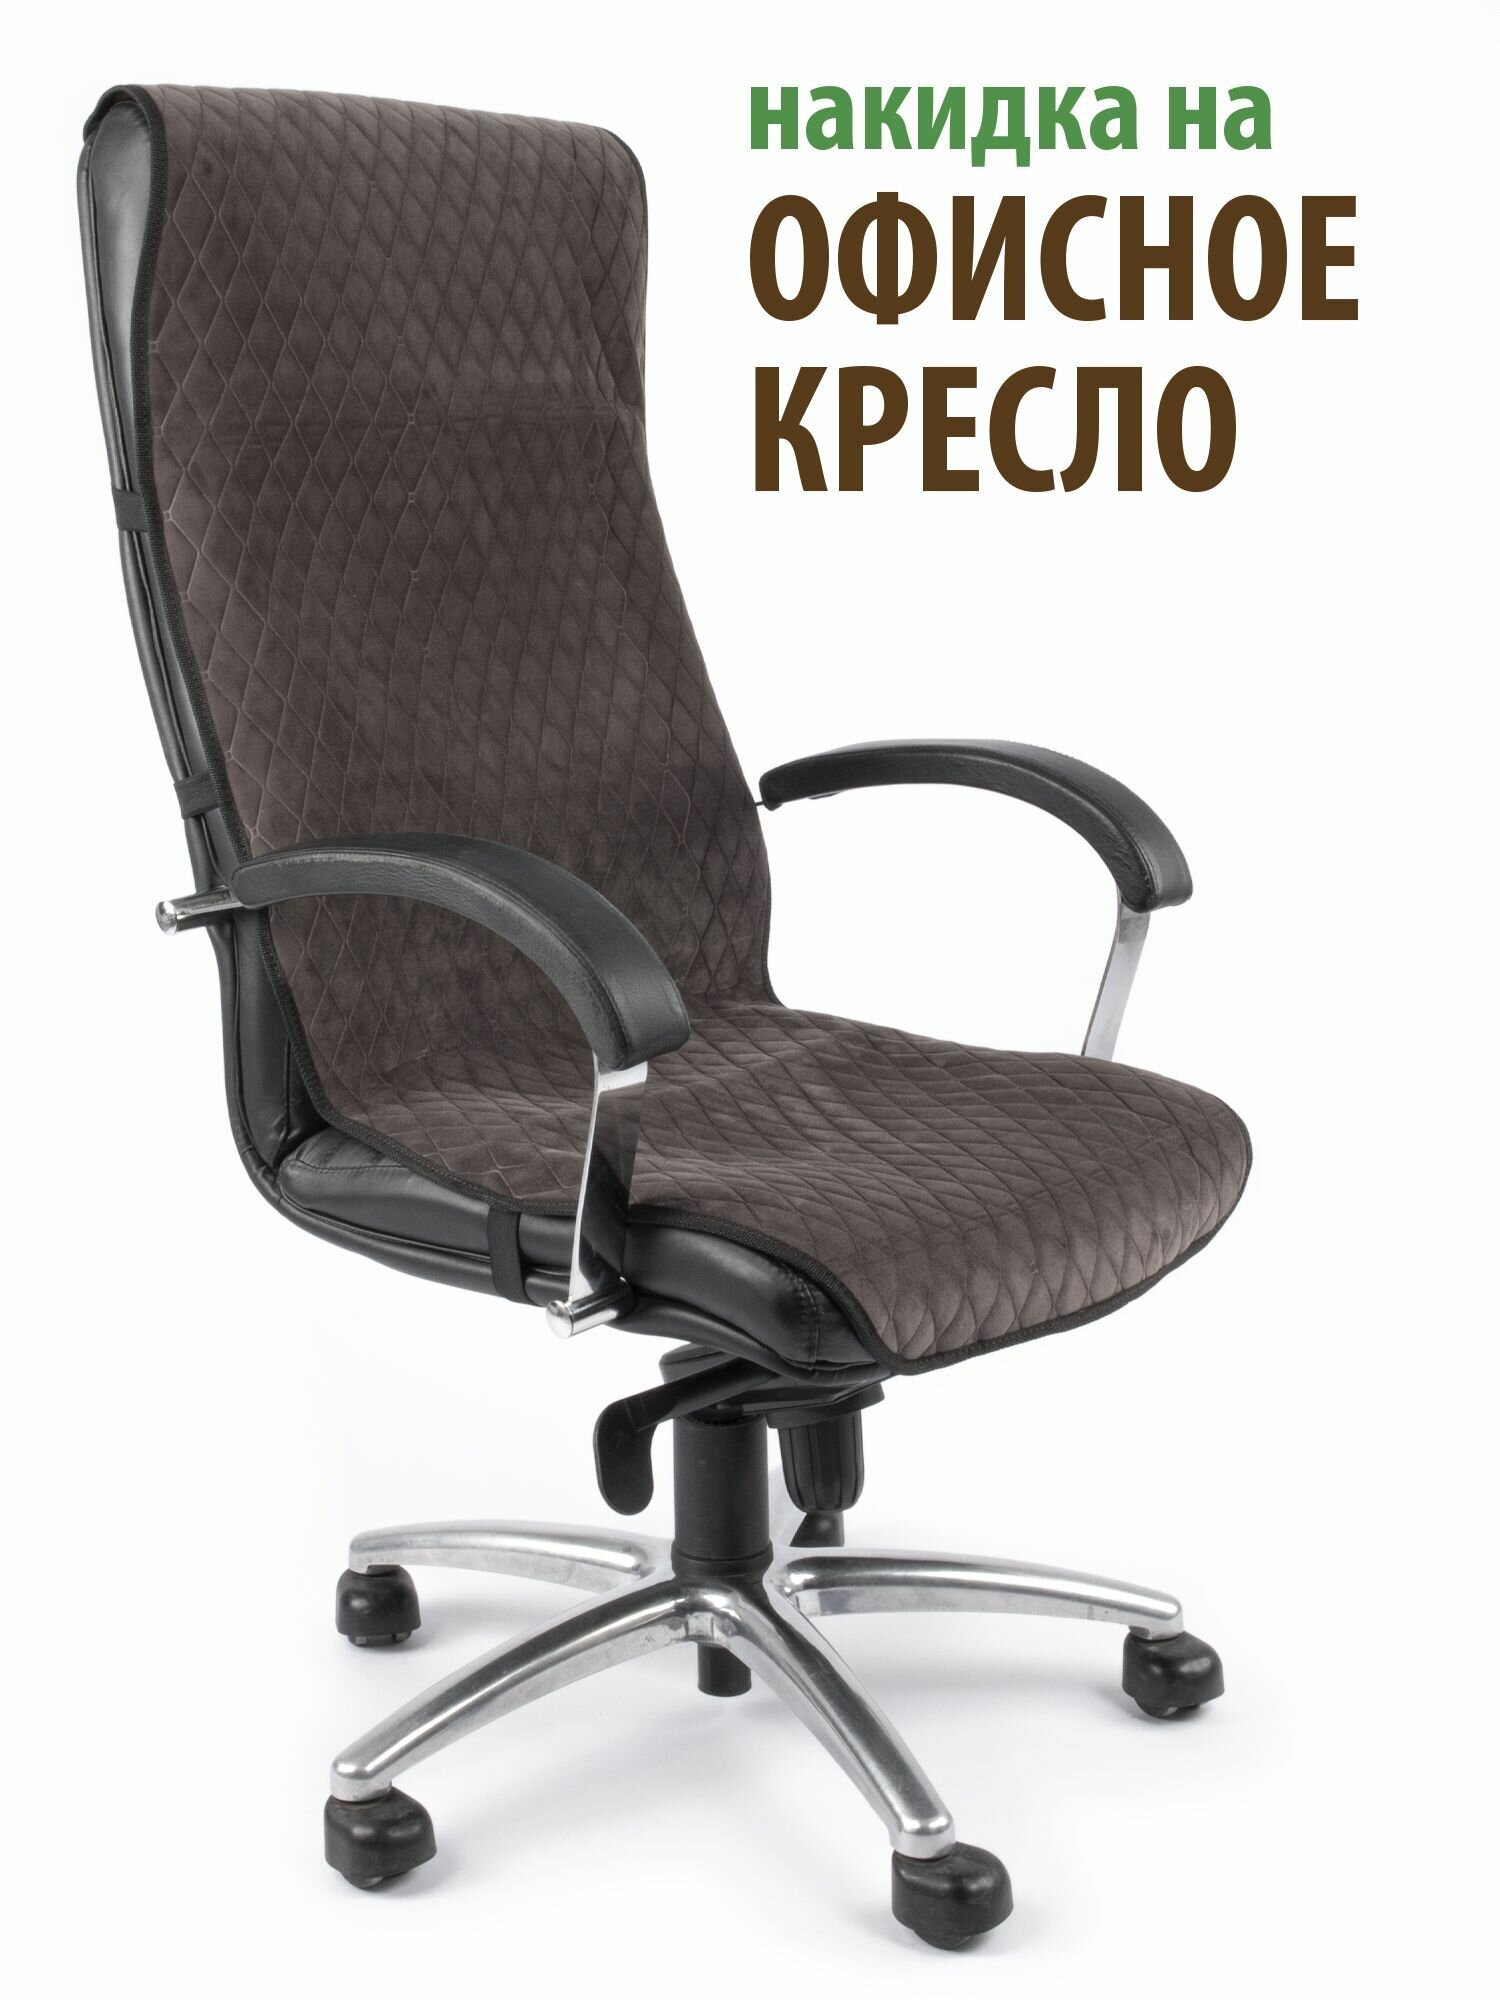 Чехол (накидка) для компьютерного офисного кресла Ромб коричневый